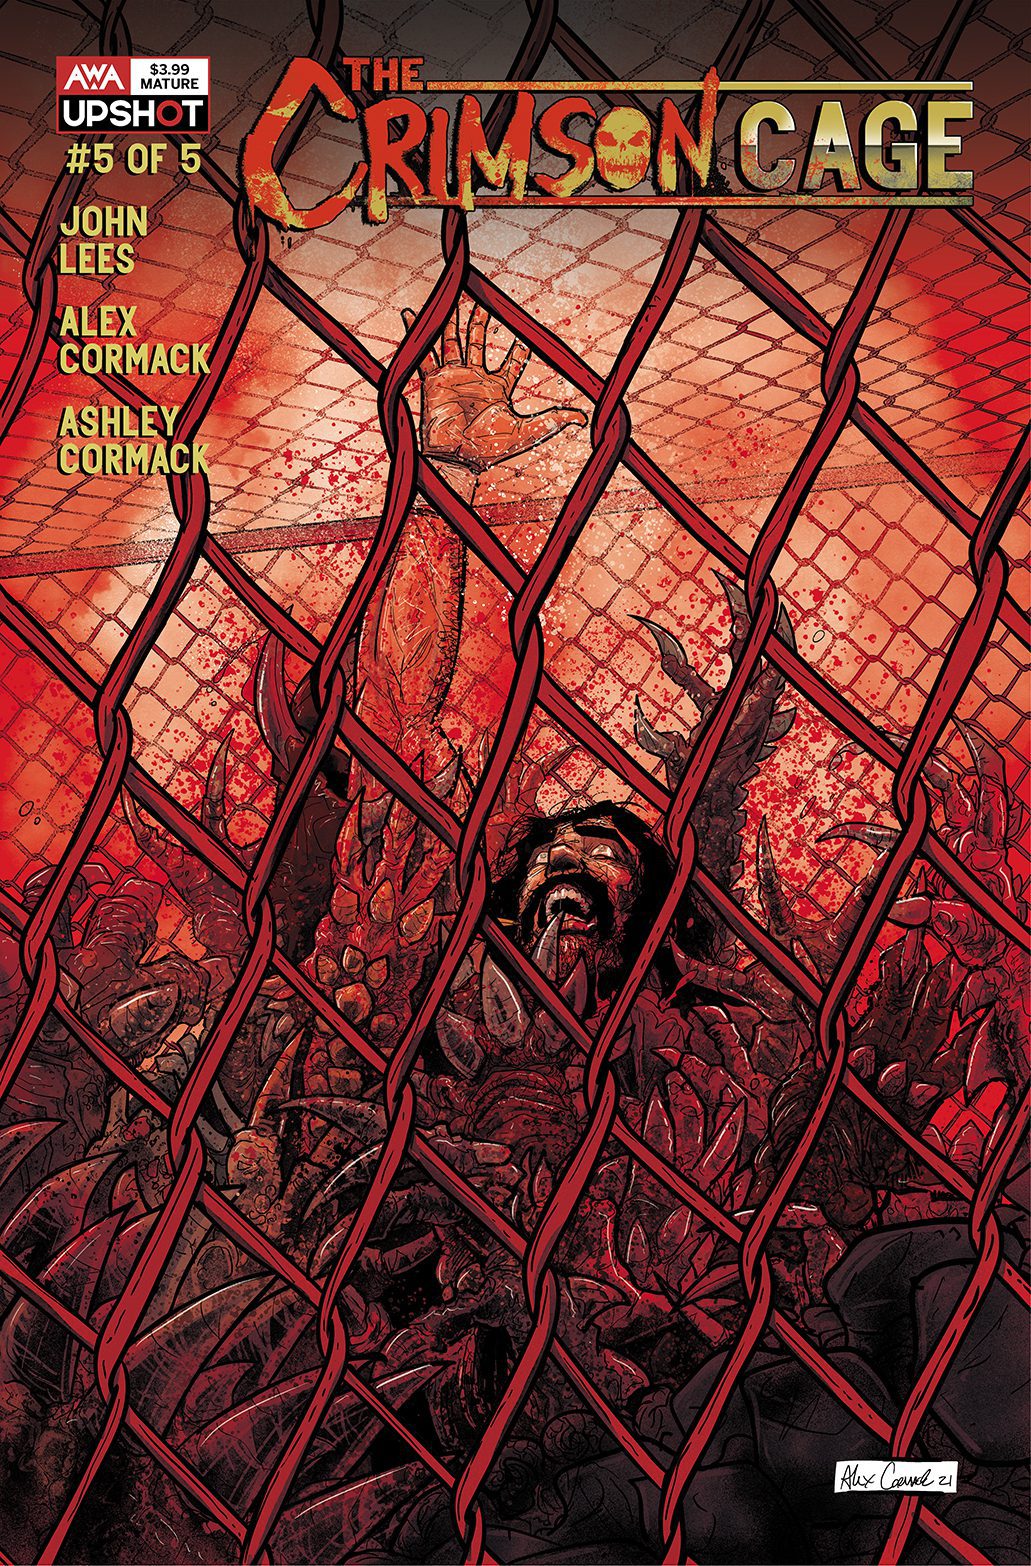 The Crimson Cage #5